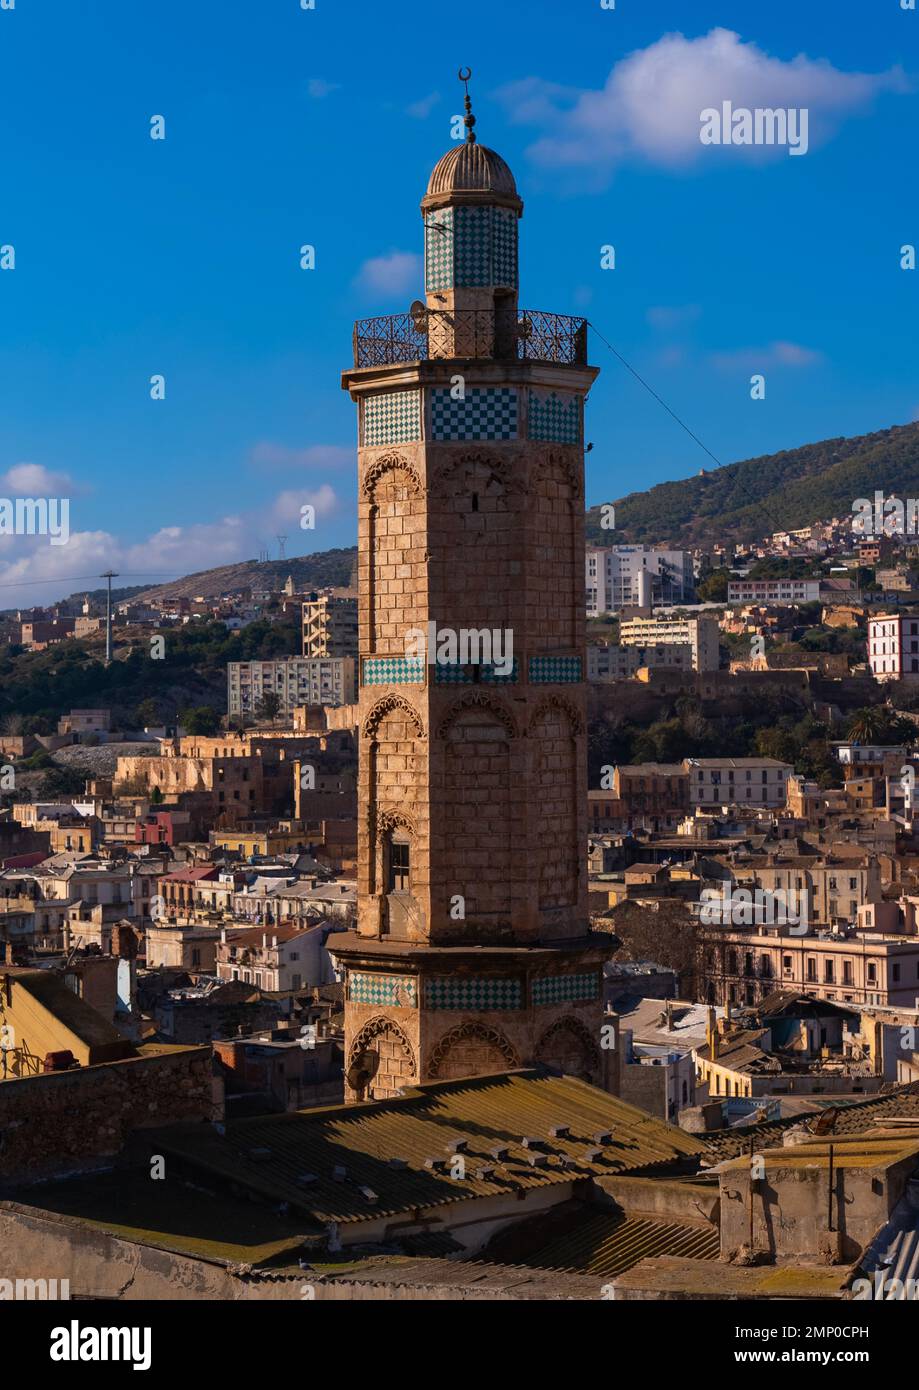 Minaret of a mosque, North Africa, Oran, Algeria Stock Photo